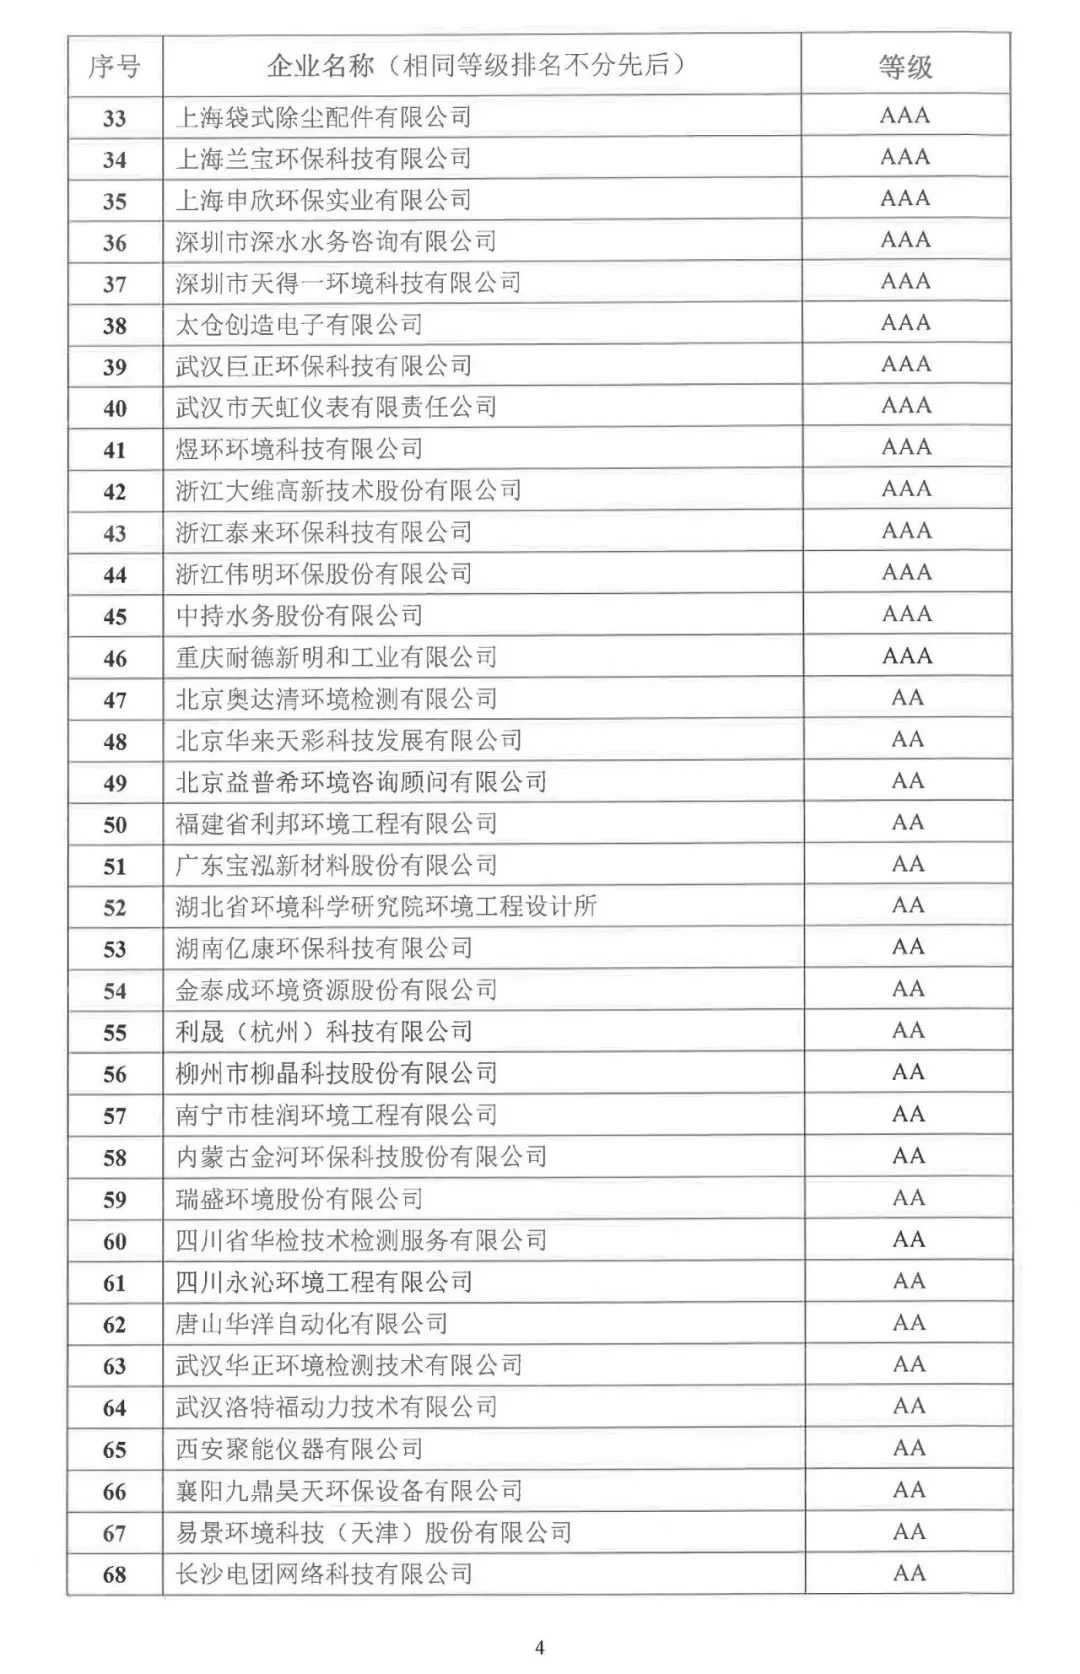 第十批中国环境保护产业行业企业信用等级评价结果发布 76家企业获A级以上信用等级！2